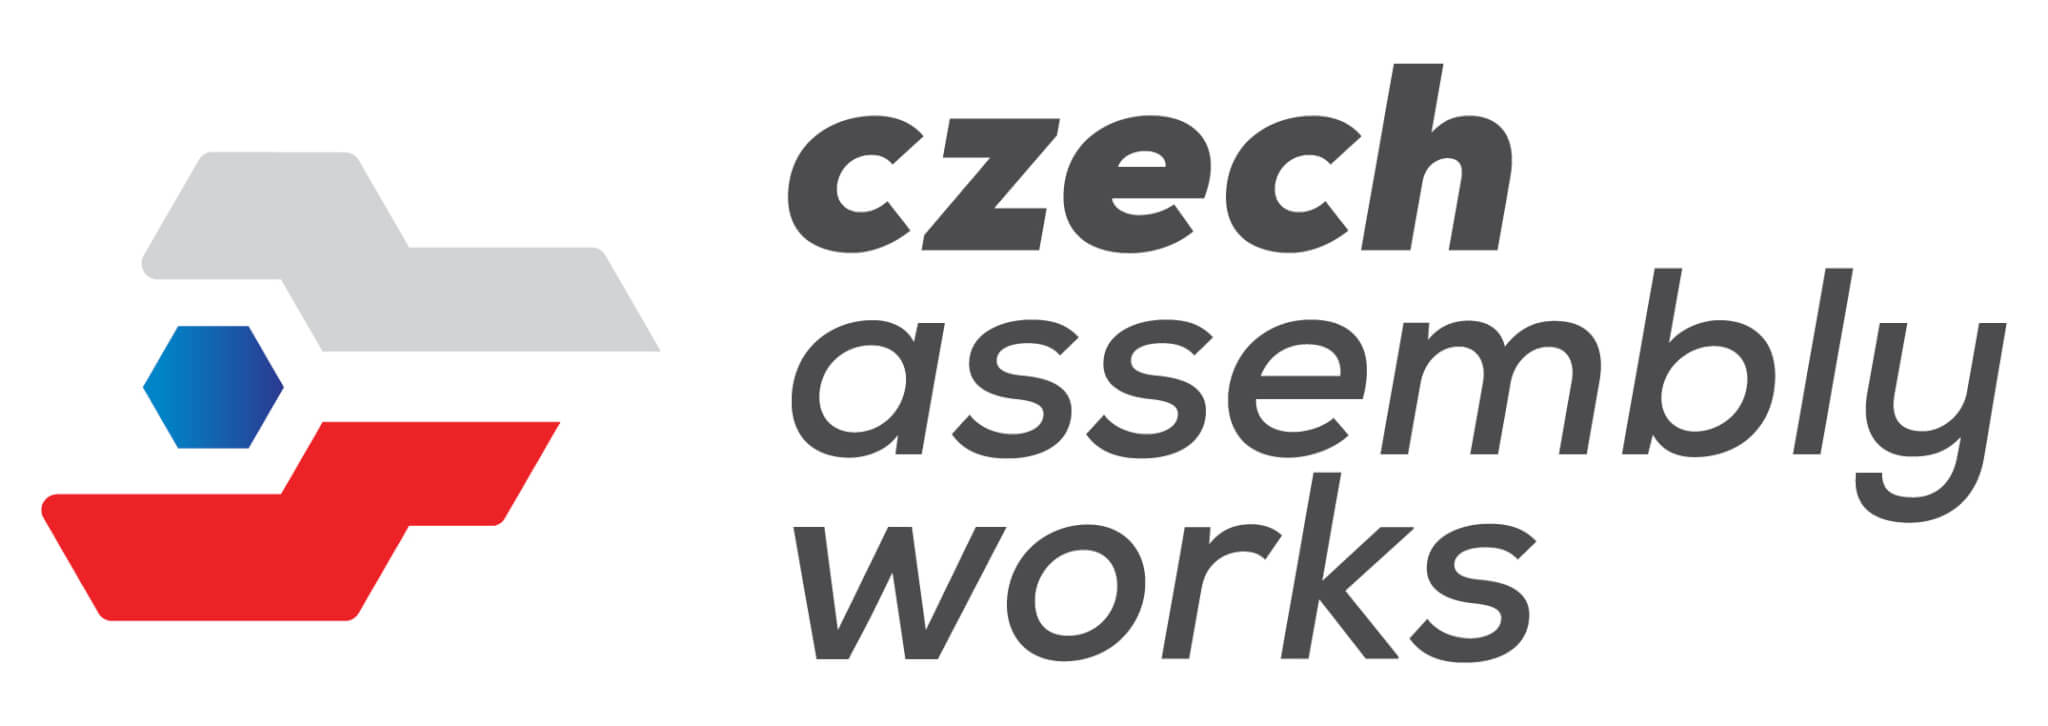 Czech assembly works